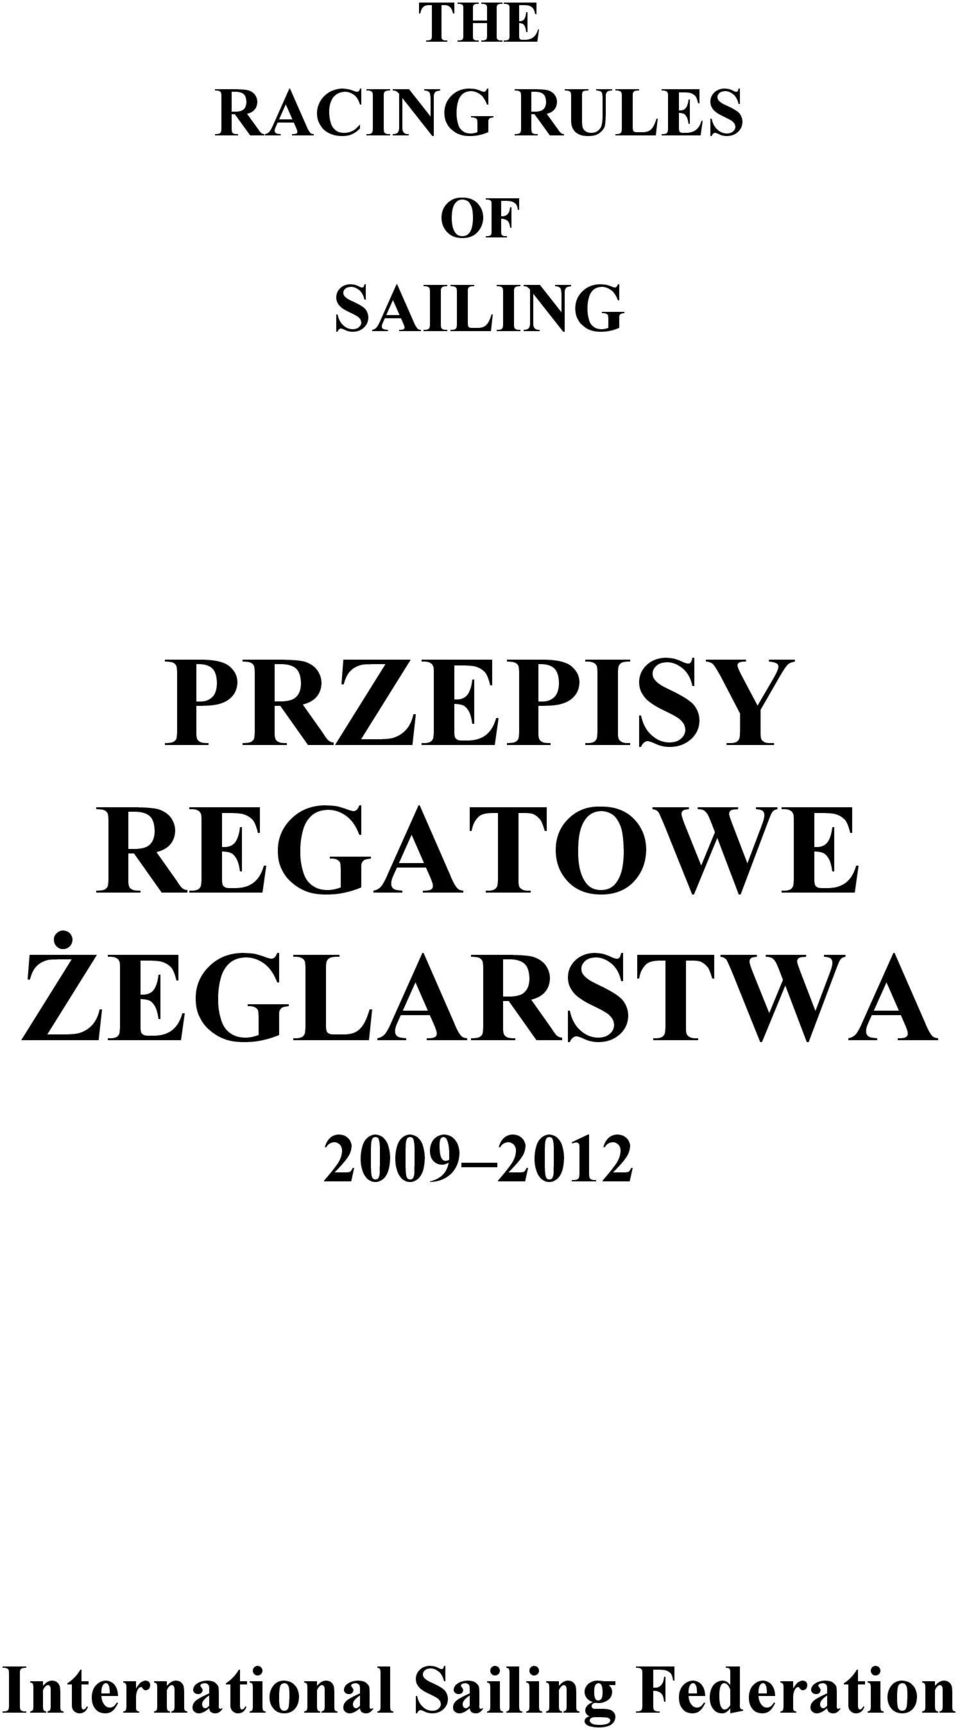 REGATOWE EGLARSTWA 2009